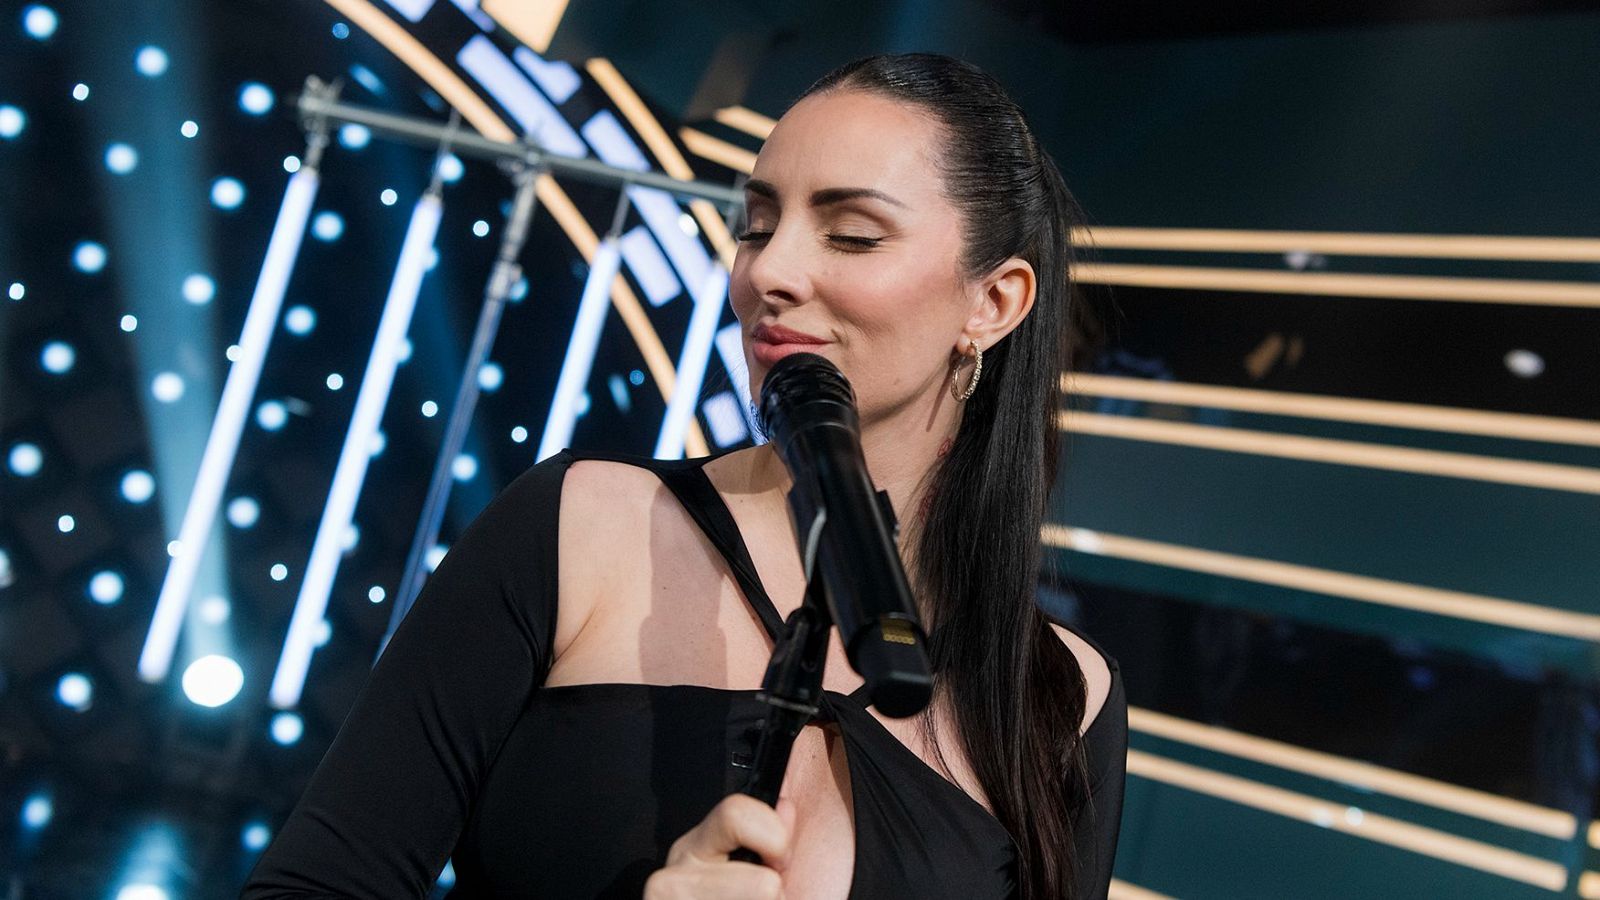 Mala Rodríguez interpreta su último single 'Casi Nadie' - VER AHORA